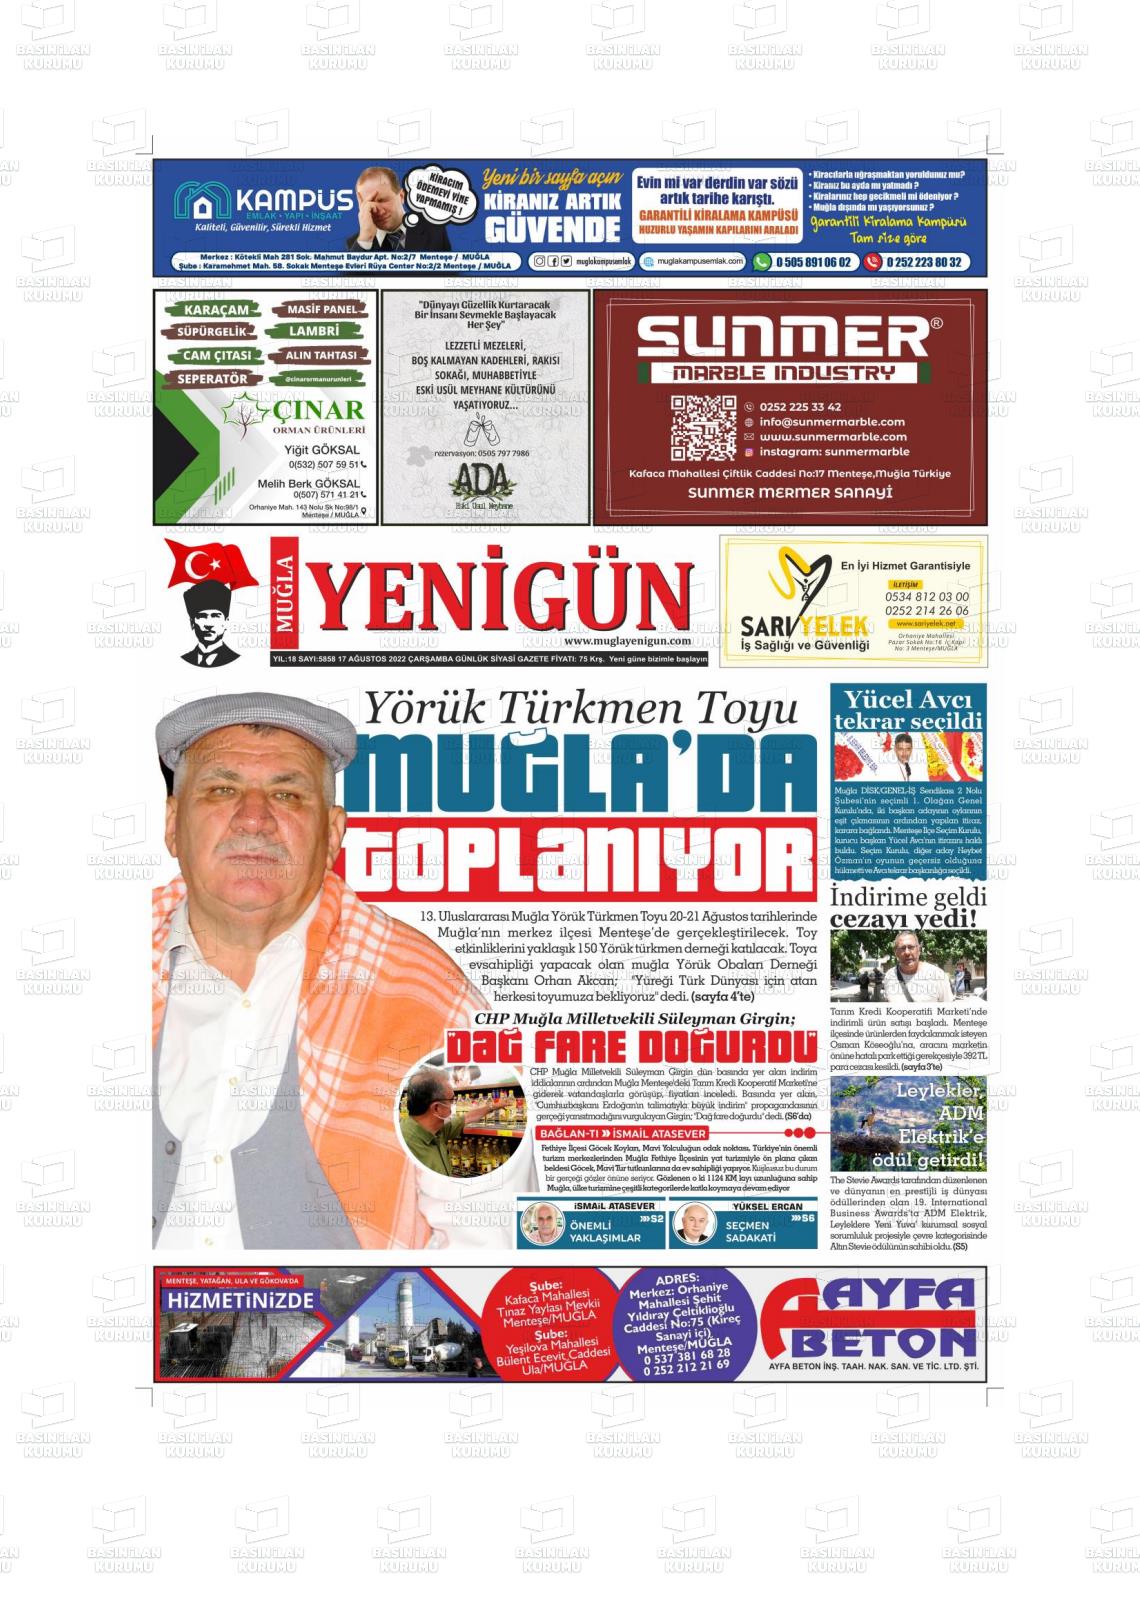 17 Ağustos 2022 Muğla Yenigün Gazete Manşeti